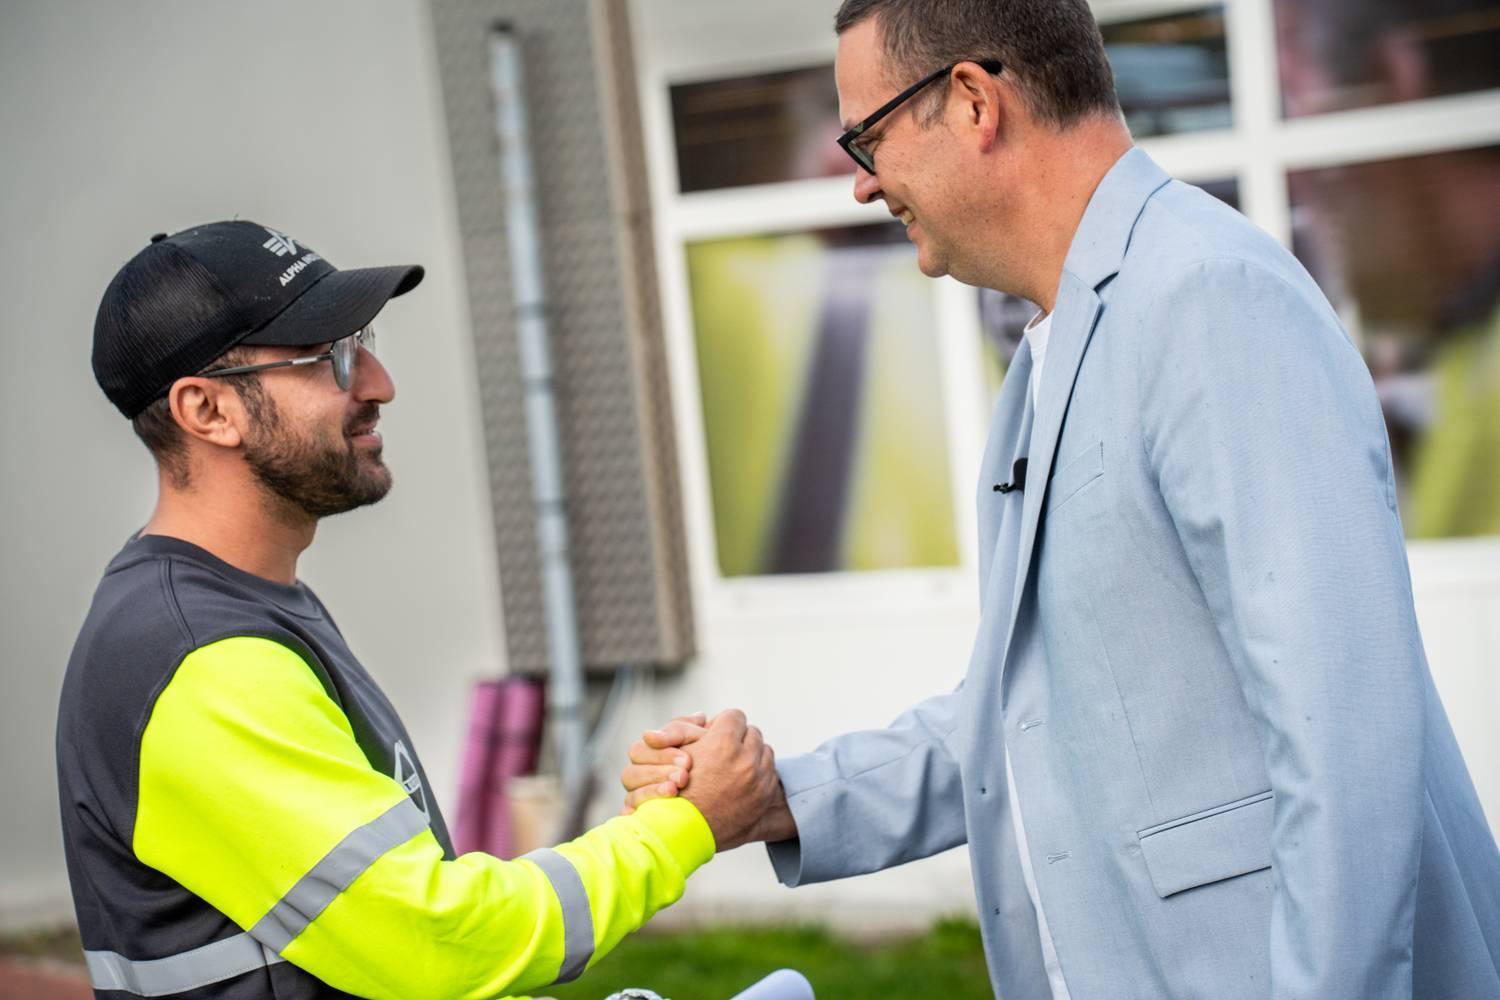 Onze voorzitter Raoul Hedebouw trok naar Volvo Trucks in Gent, samen met Robin Tonniau, onze federale lijsttrekker in Oost-Vlaanderen, die zelf 15 jaar als arbeider werkte in de auto-industrie. Ze legden er de arbeiders onze Grote Bevraging voor.